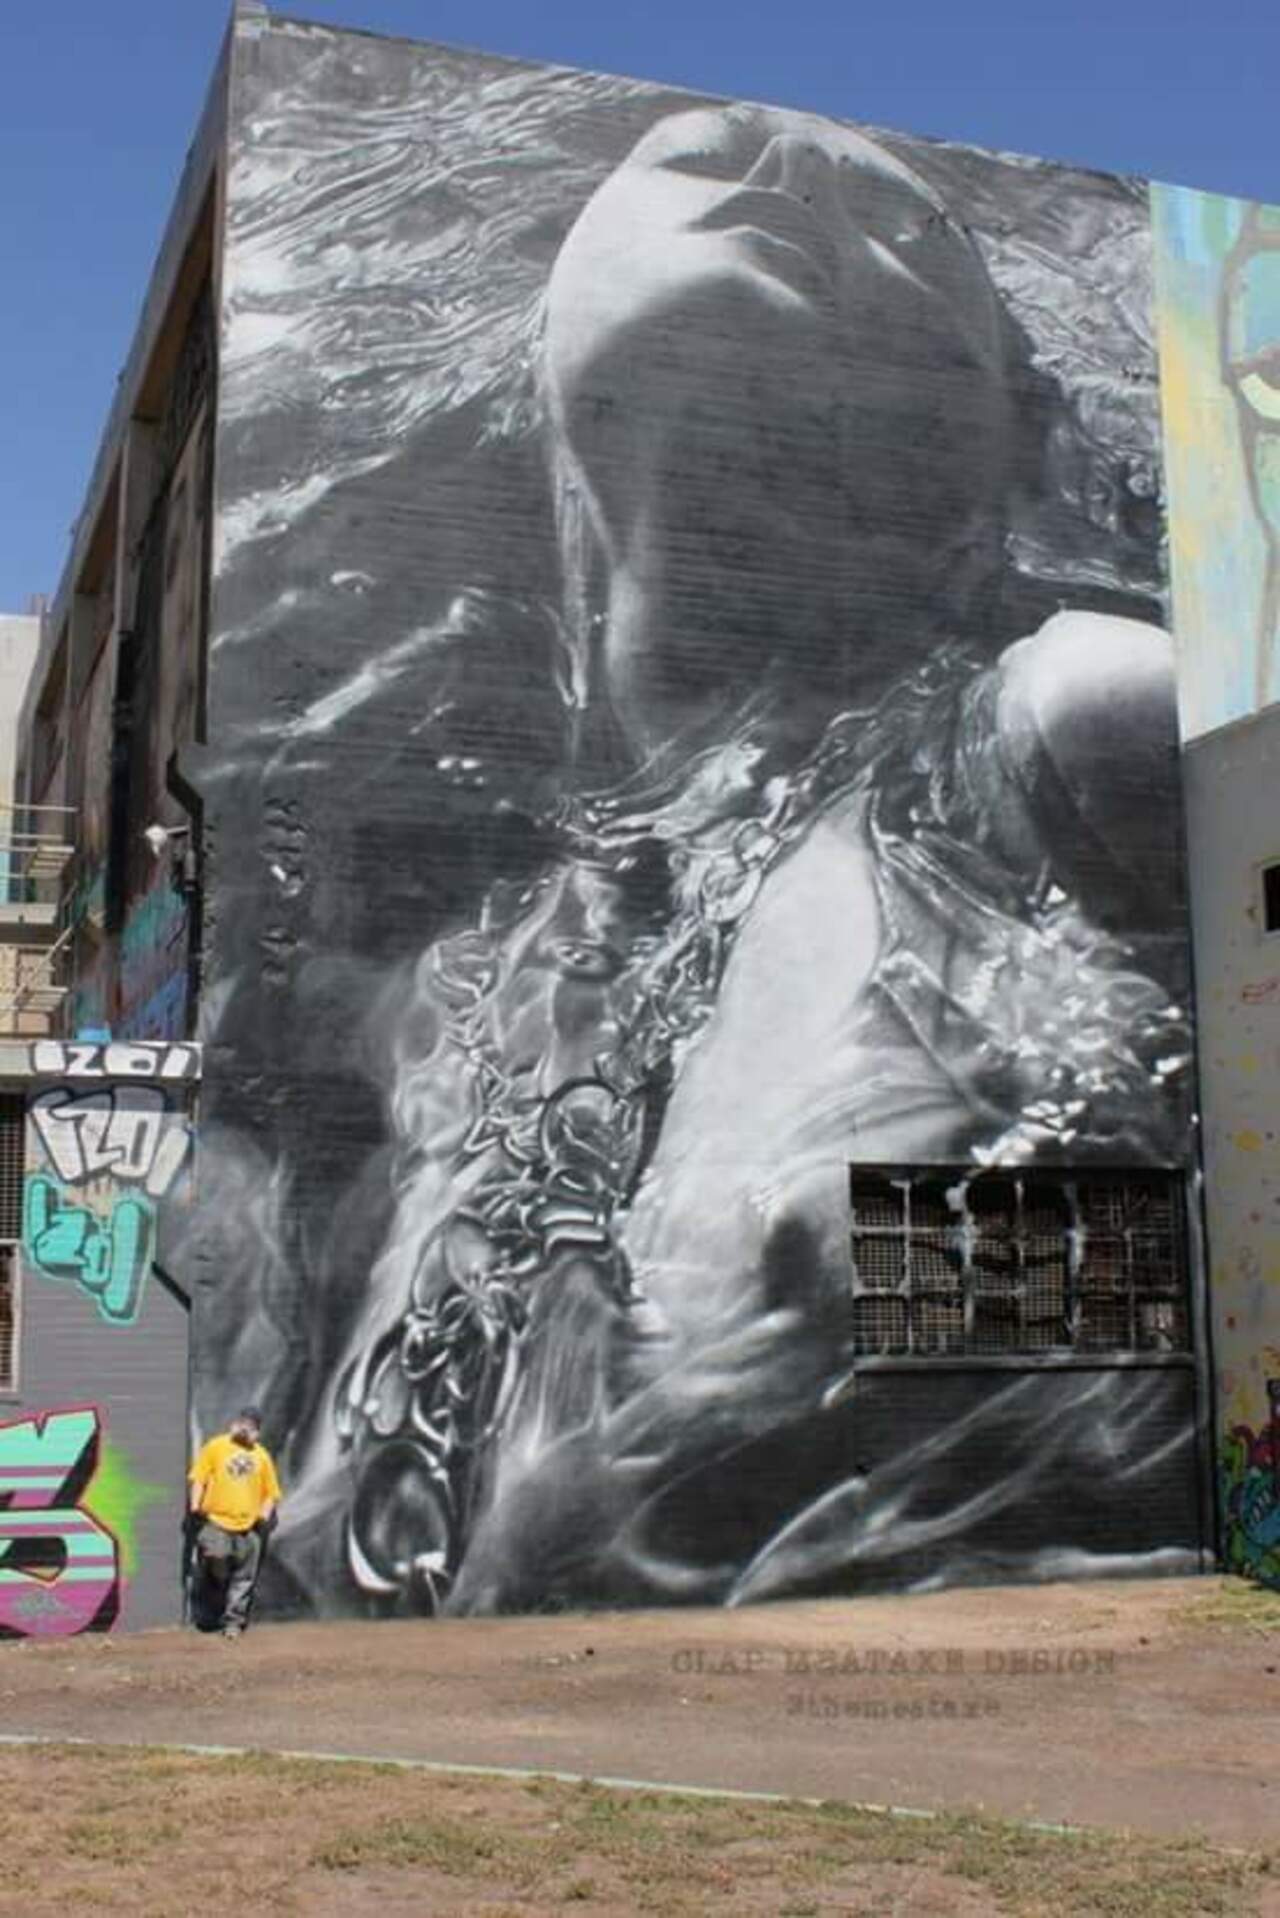 By CLAP -Meataxe design.
#Art #StreetArt #Graffiti #Mural #ArtLovers http://t.co/FITqBuaTum